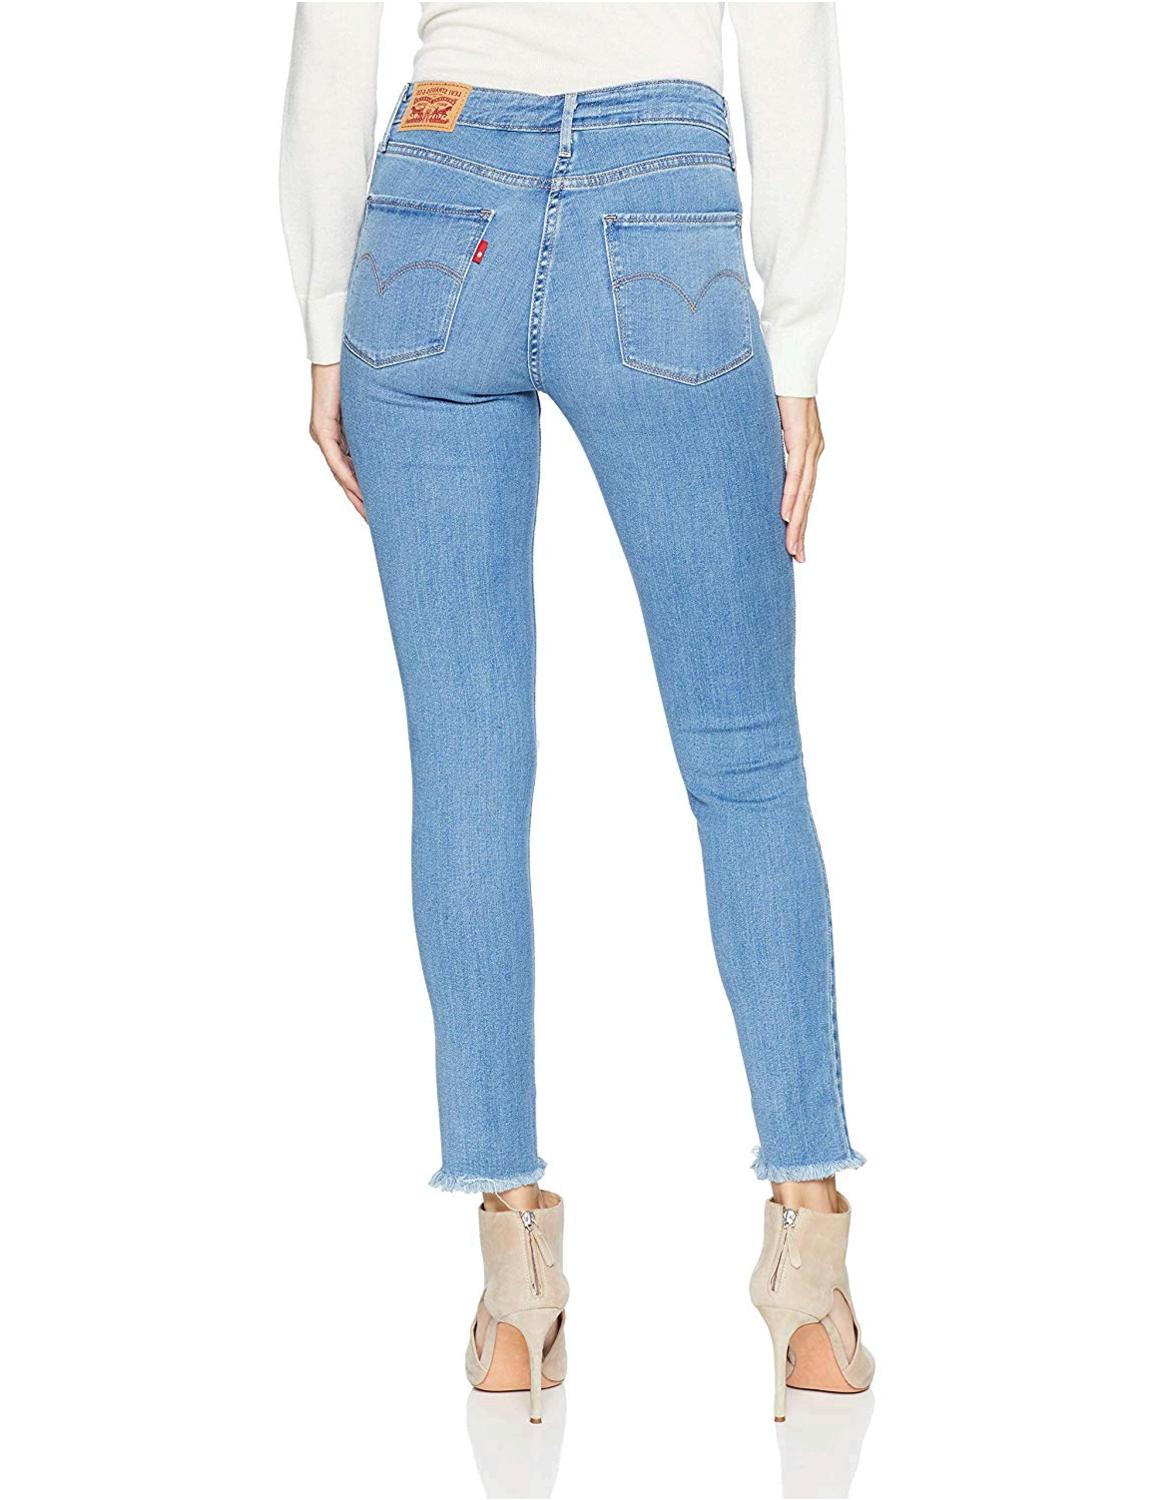 Levi's Women's 721 High Rise Skinny Jean, Take Me Out, 28, Take Me Out, Size 6.0 | eBay